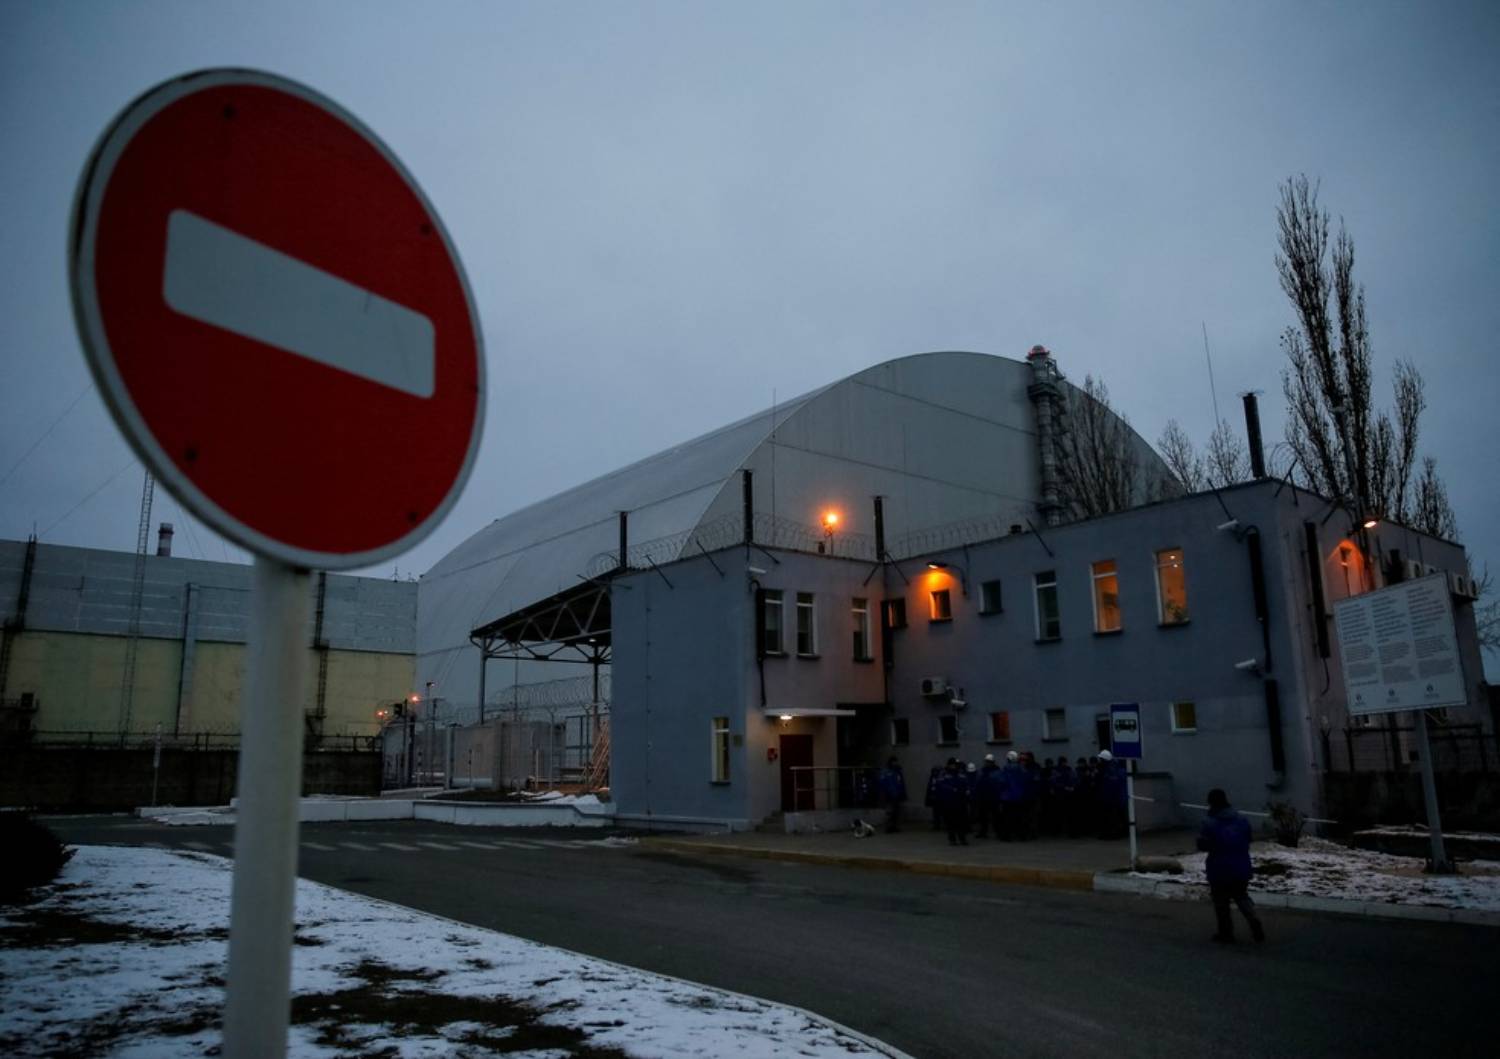 Nível de radioatividade em Chernobyl é 'anormal'